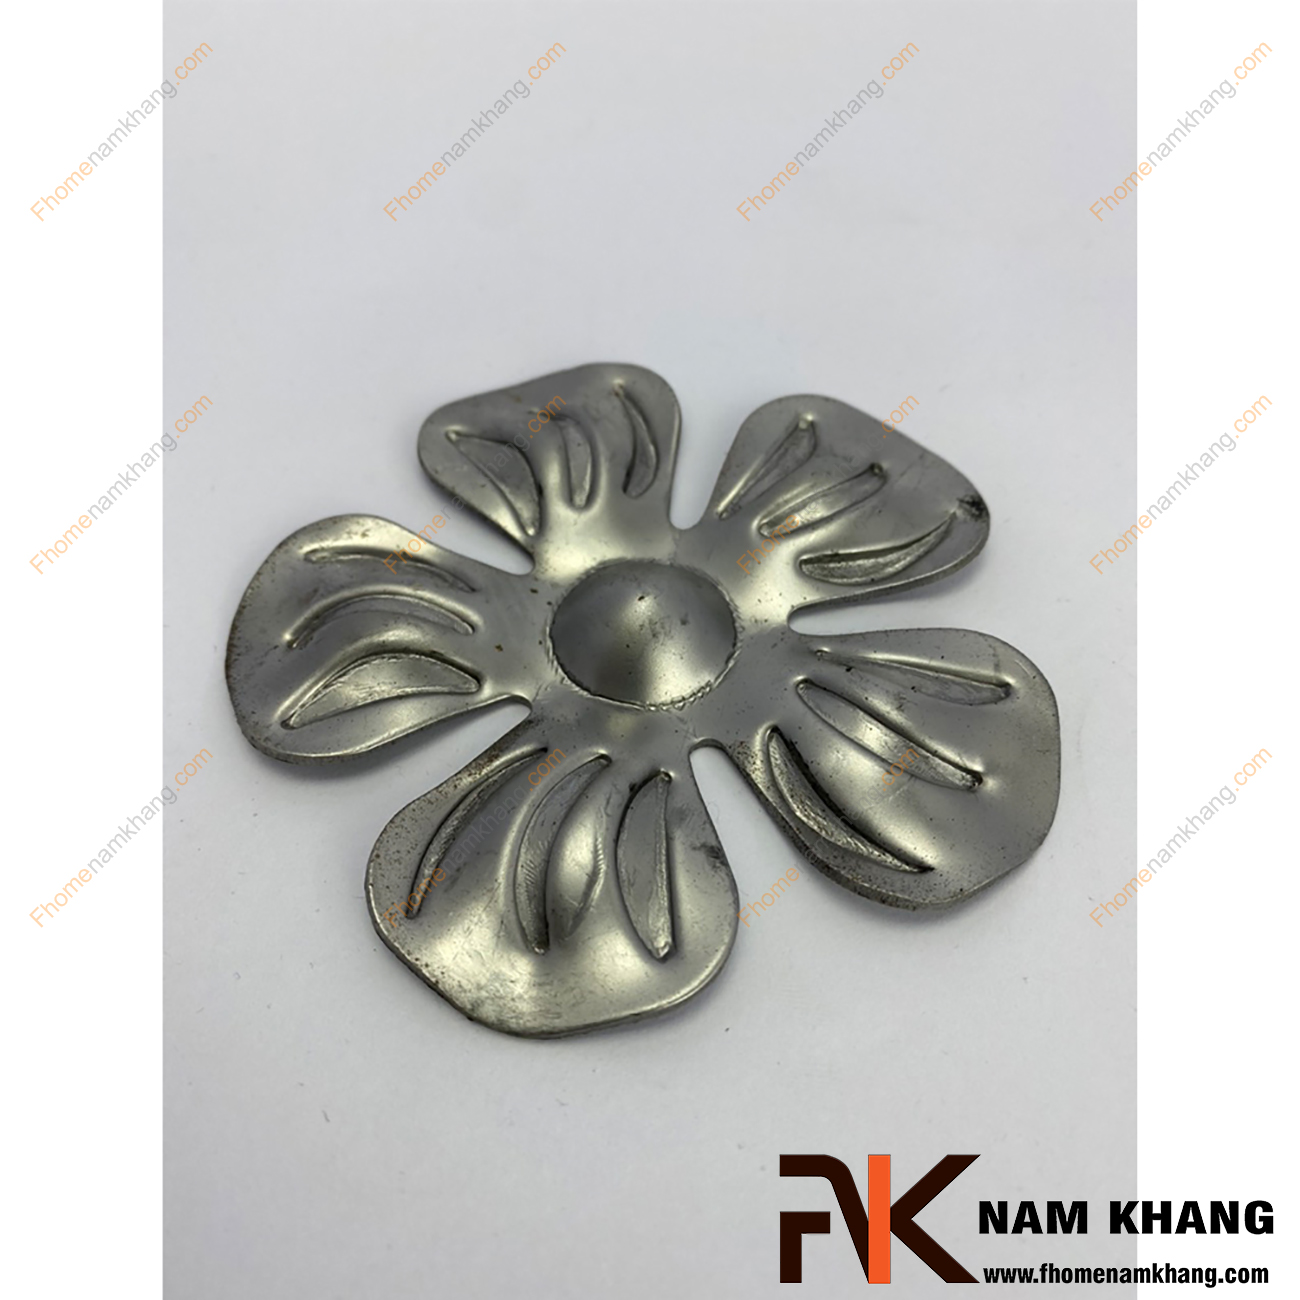 Hoa thép dập hình bông hoa 5 cánh dù NKS-05T được sản xuất từ thép tấm có độ dày 1-2mm, có bề mặt láng mịn, hàn gắn dể dàng vào các chi tiết thép khác.